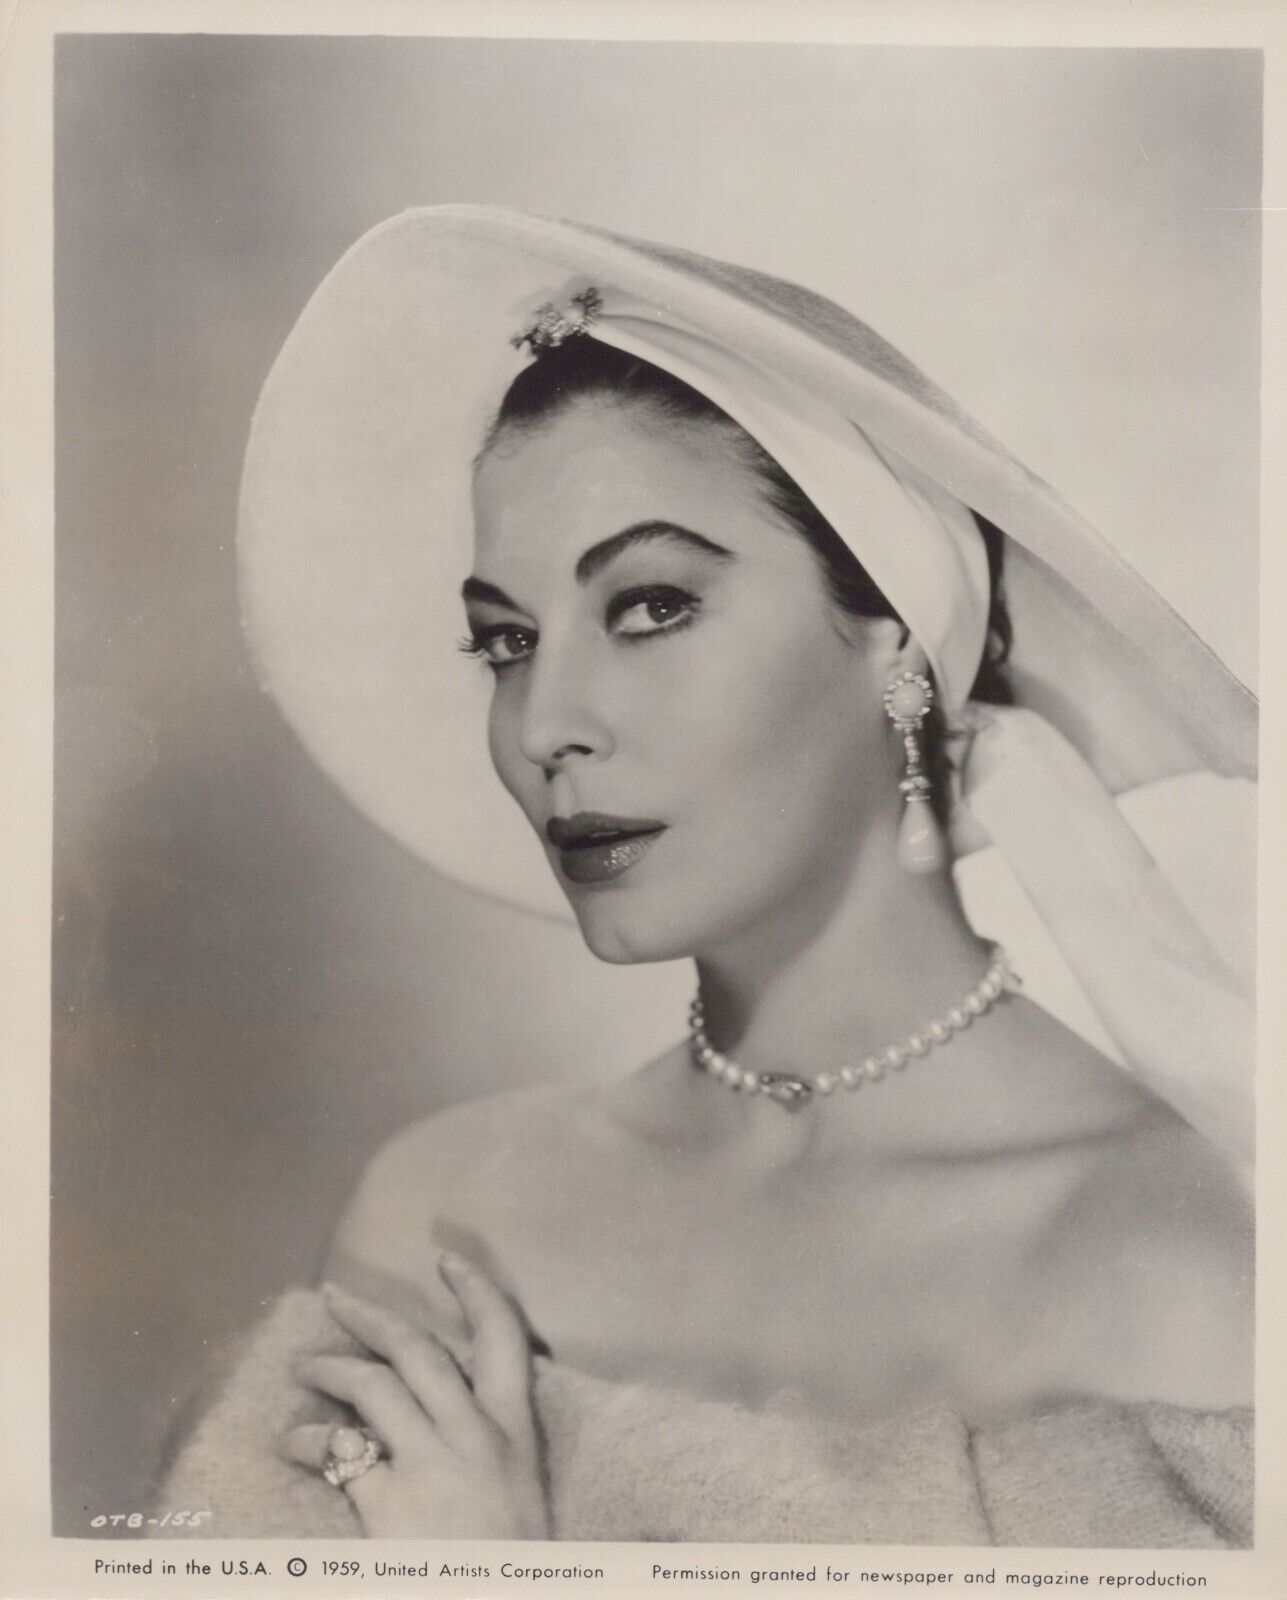 Ava Gardner (1959) 🎬⭐ Stylish Glamorous Pose - Vintage Seductive Photo K 206